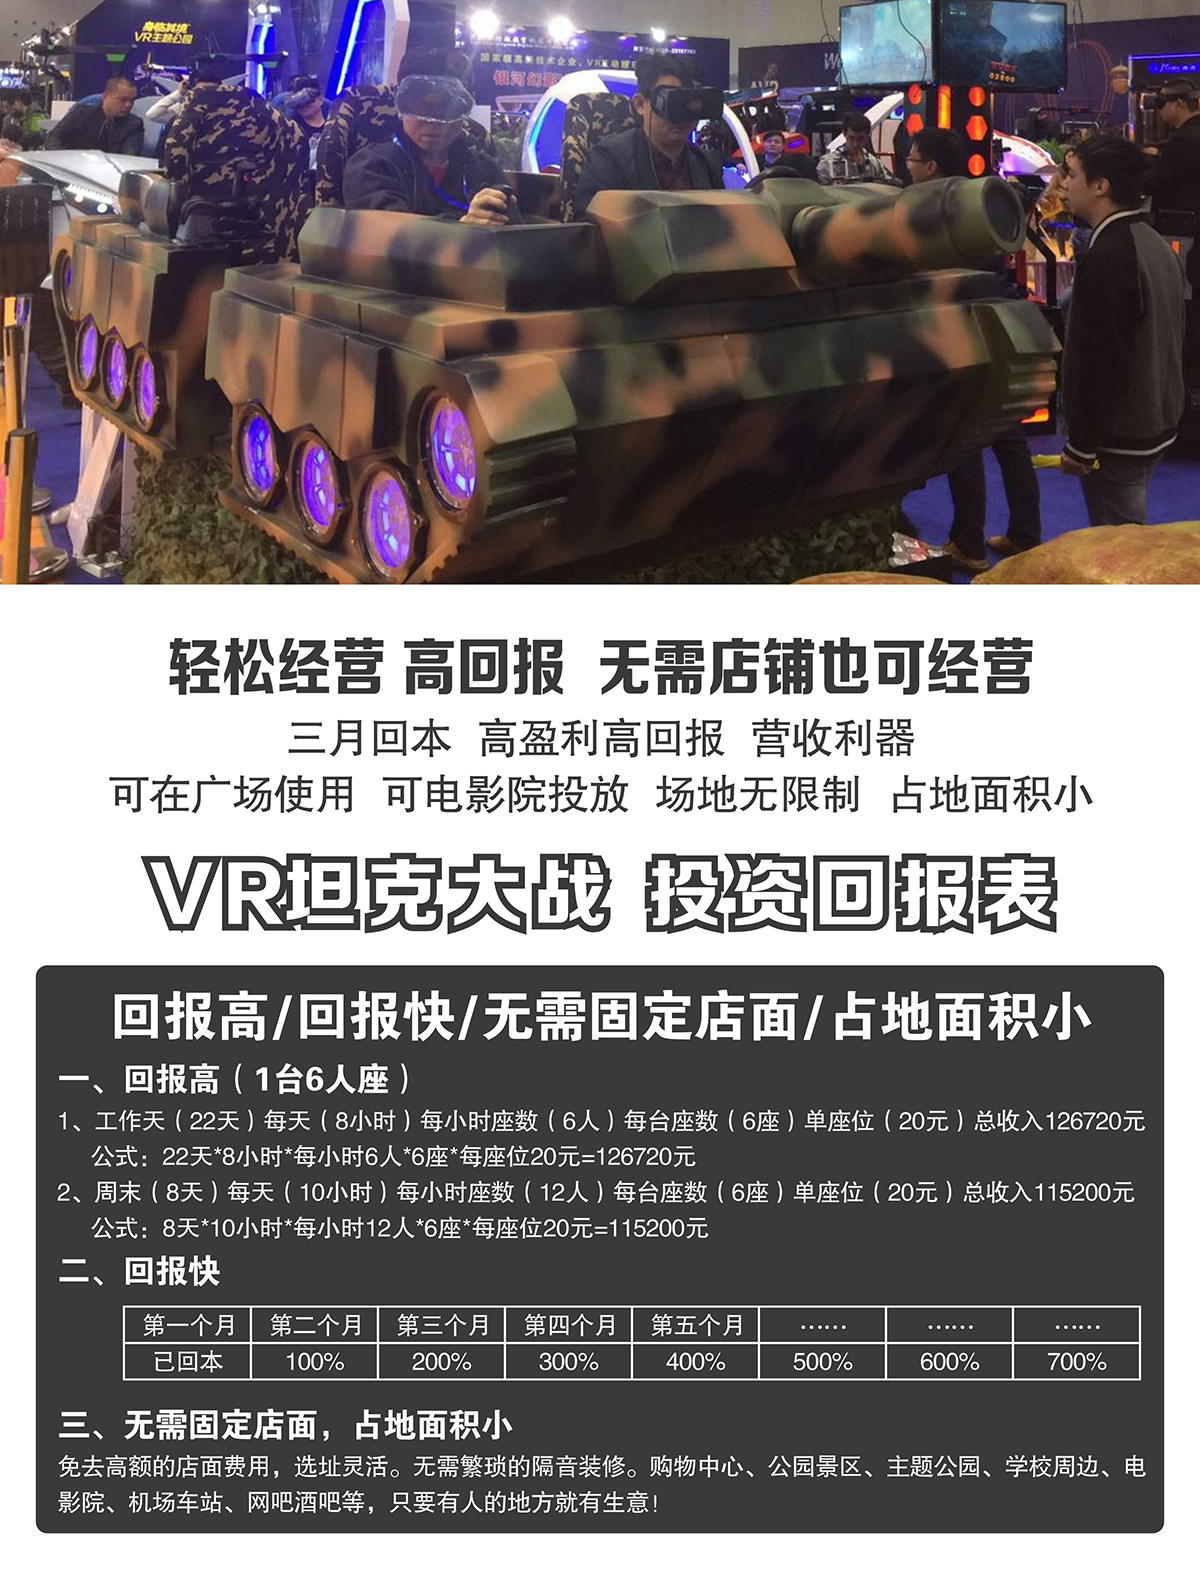 VR台风坦克大战投资回报表.jpg